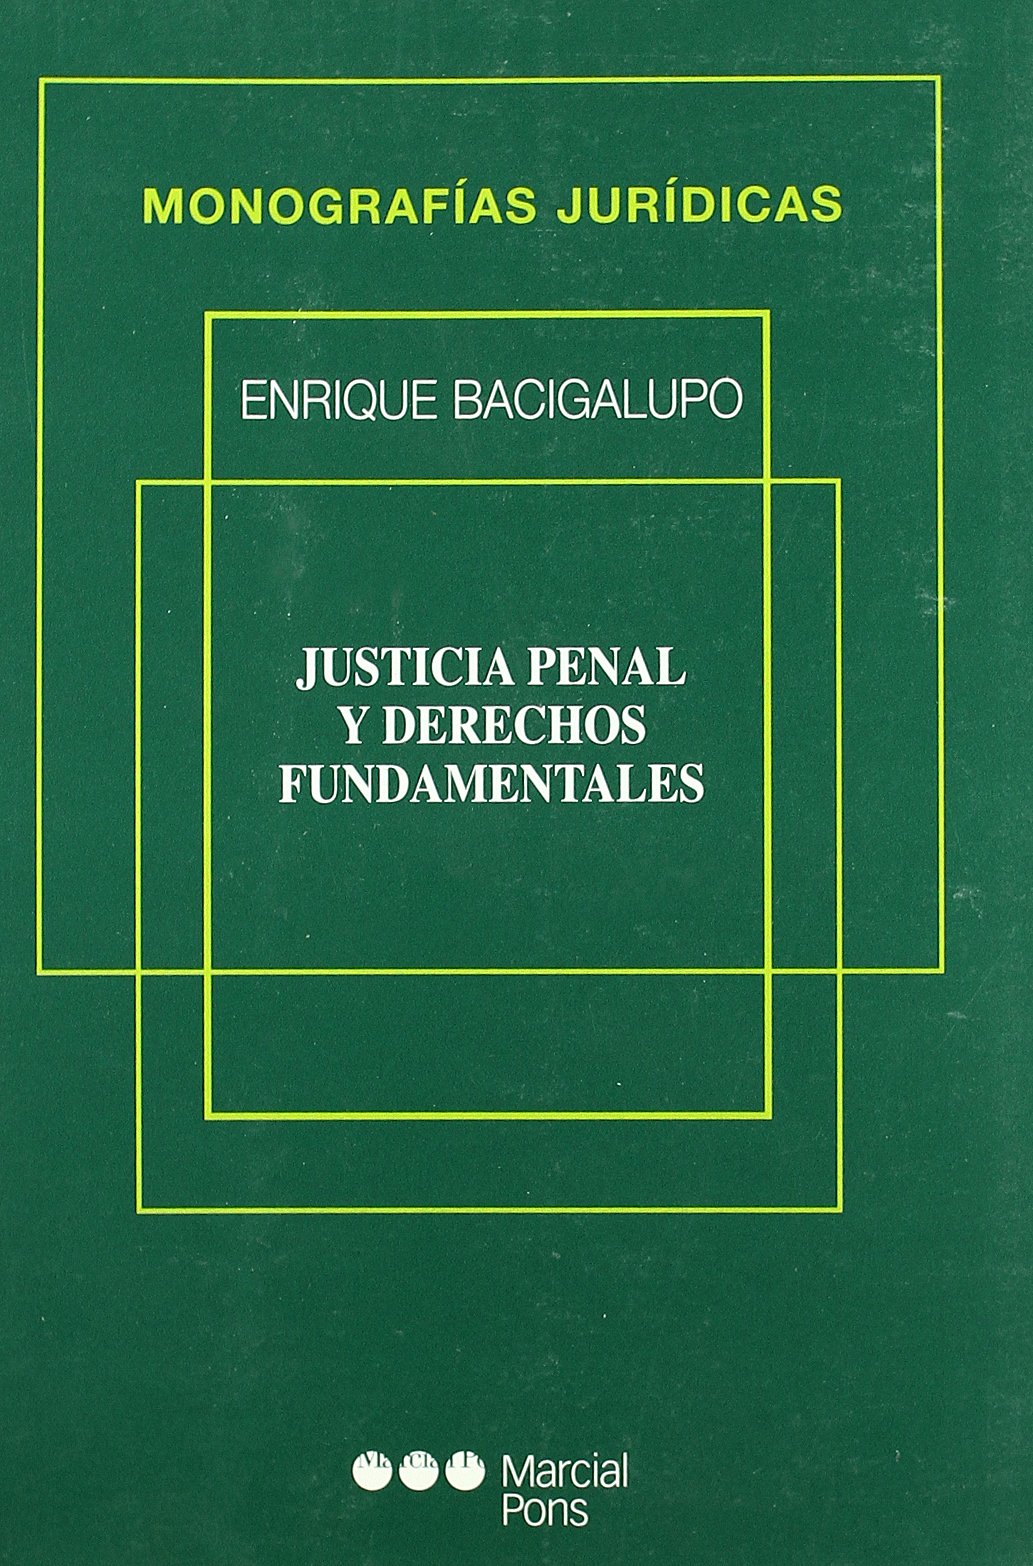 Justicia penal y derechos fundamentales. 9788472489127